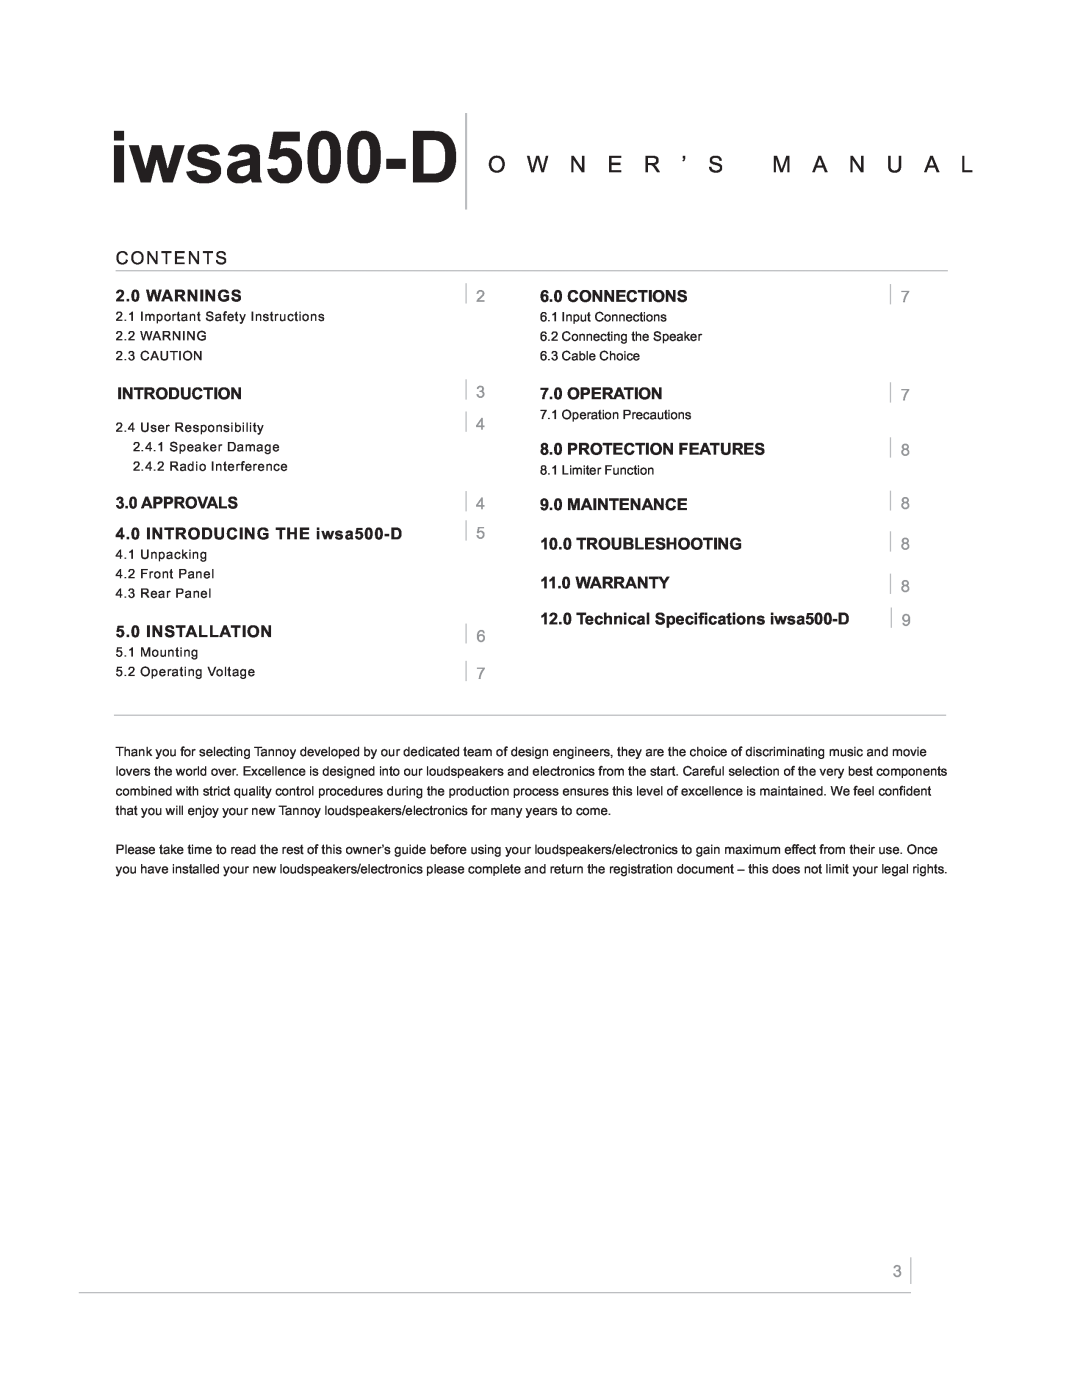 TOA Electronics IWSA500-D owner manual O W N E R ’ S M A N U A L, Contents, iwsa500-D 